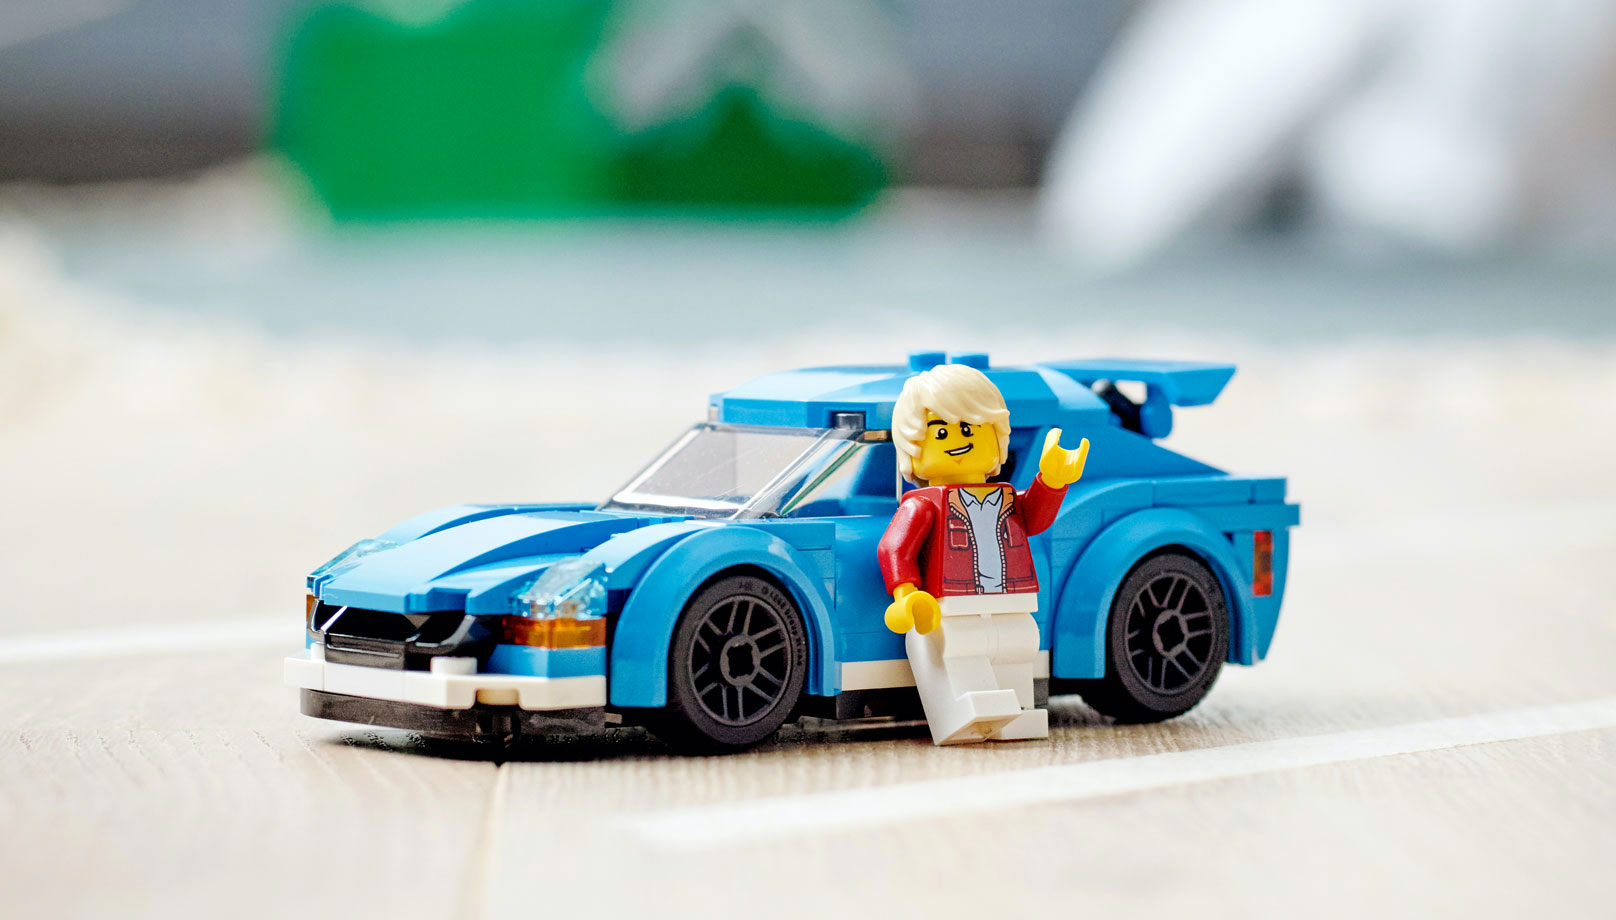 Lego детали — простота использования и взаимозаменяемость